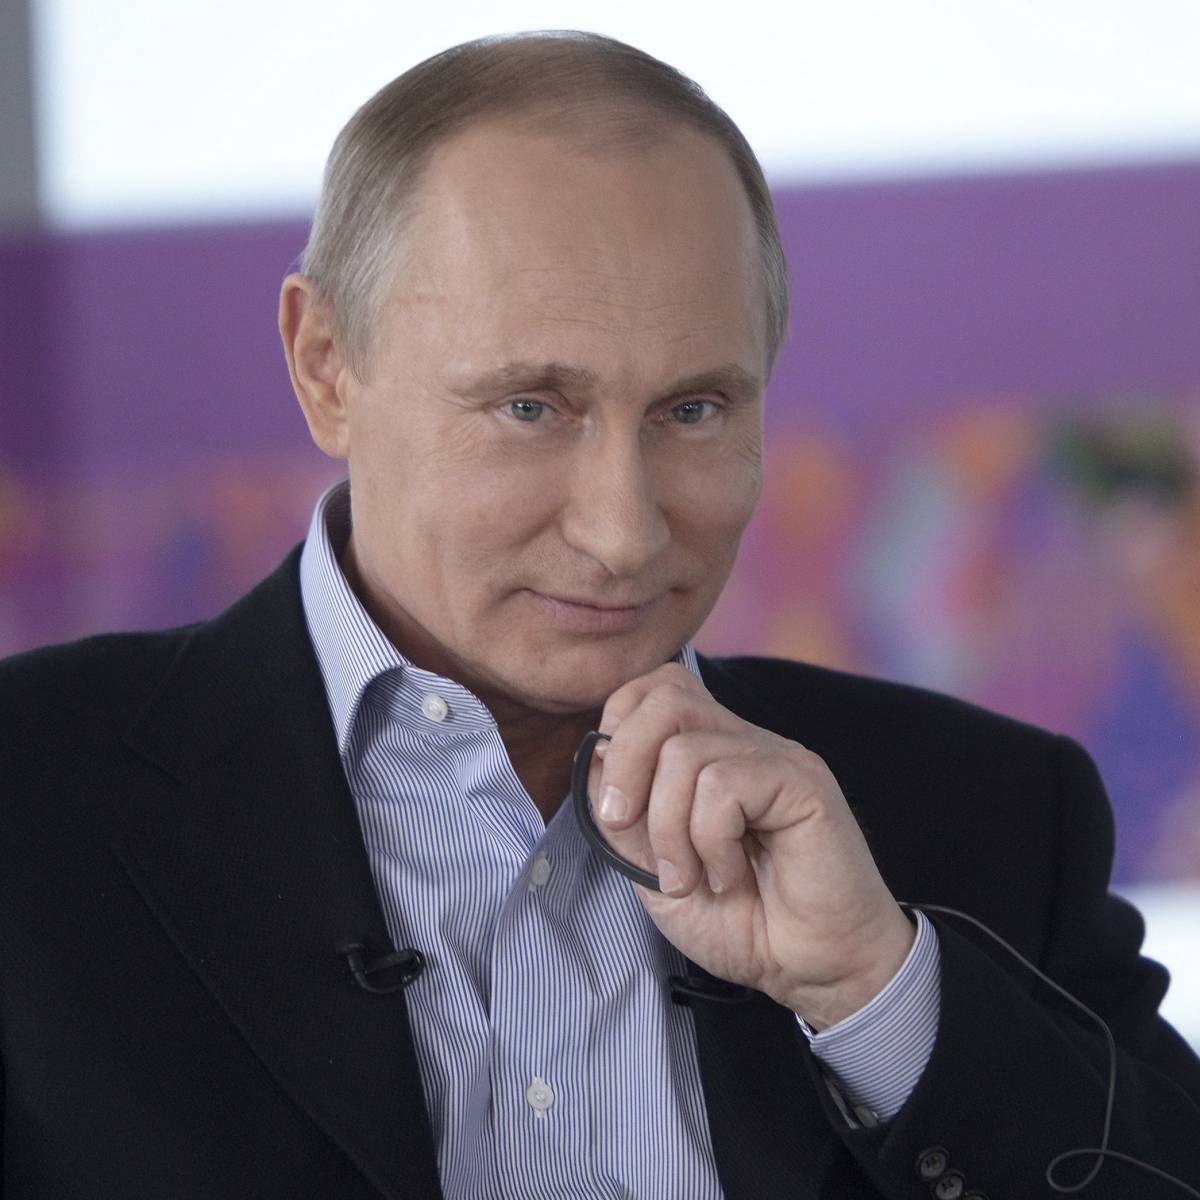 СМИ Германии: Путин делает РФ глобальным игроком, а у США нет стратегии